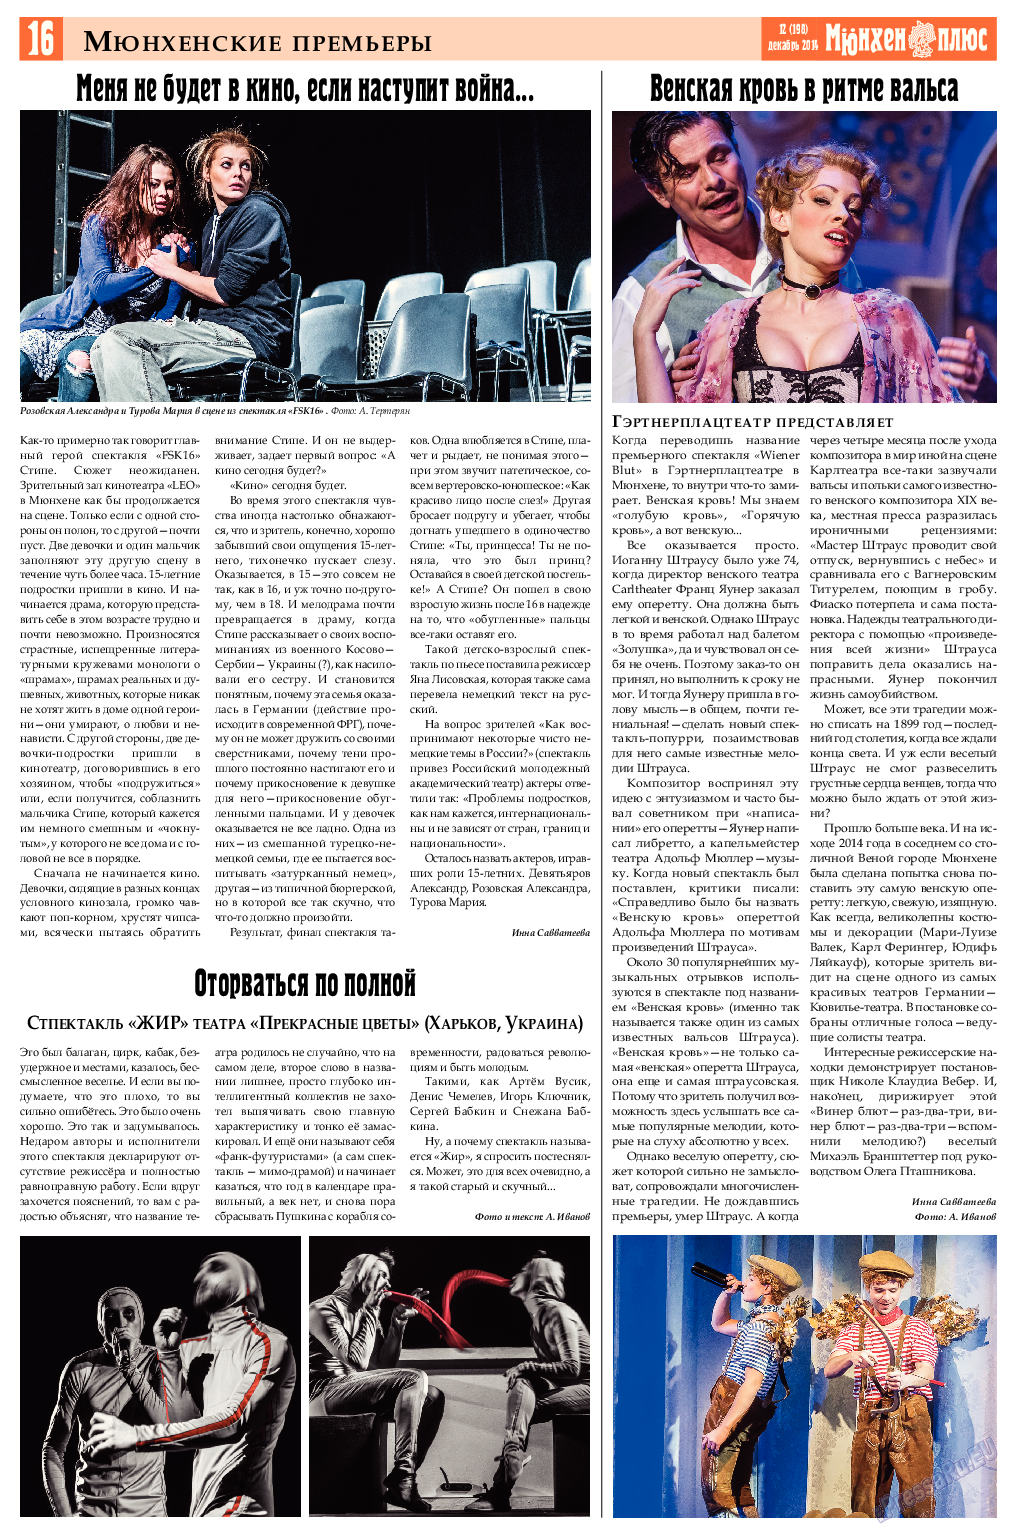 Германия плюс, газета. 2014 №12 стр.16